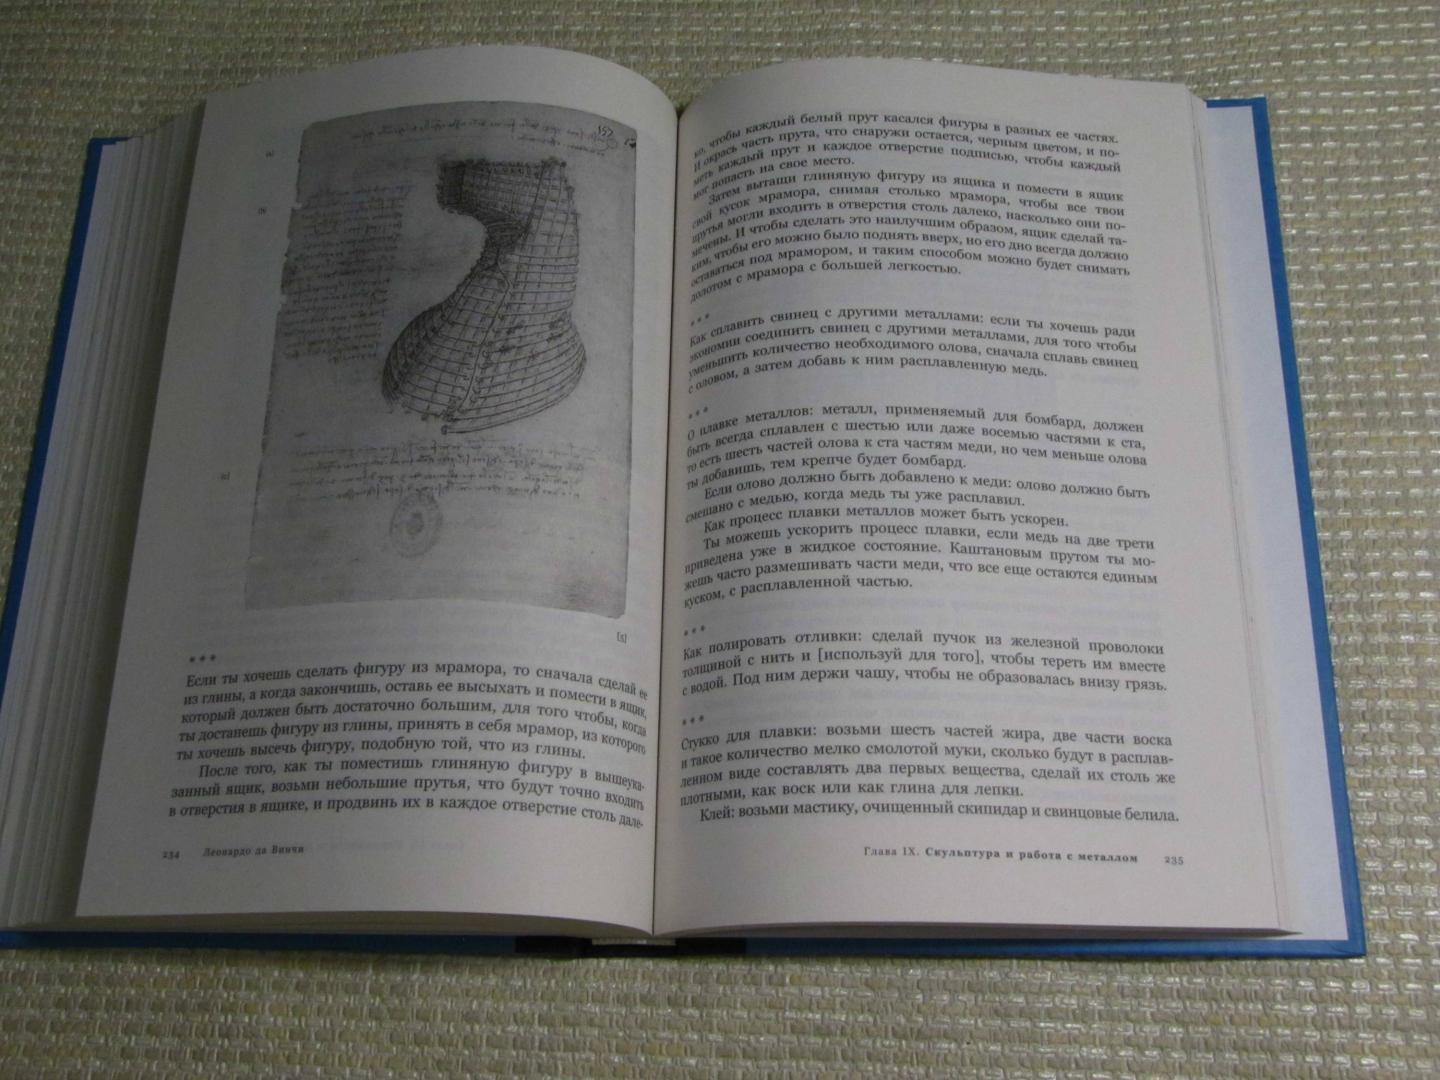 Иллюстрация 14 из 15 для Великие изобретения, эскизы, штудии - Винчи Да | Лабиринт - книги. Источник: leo tolstoy